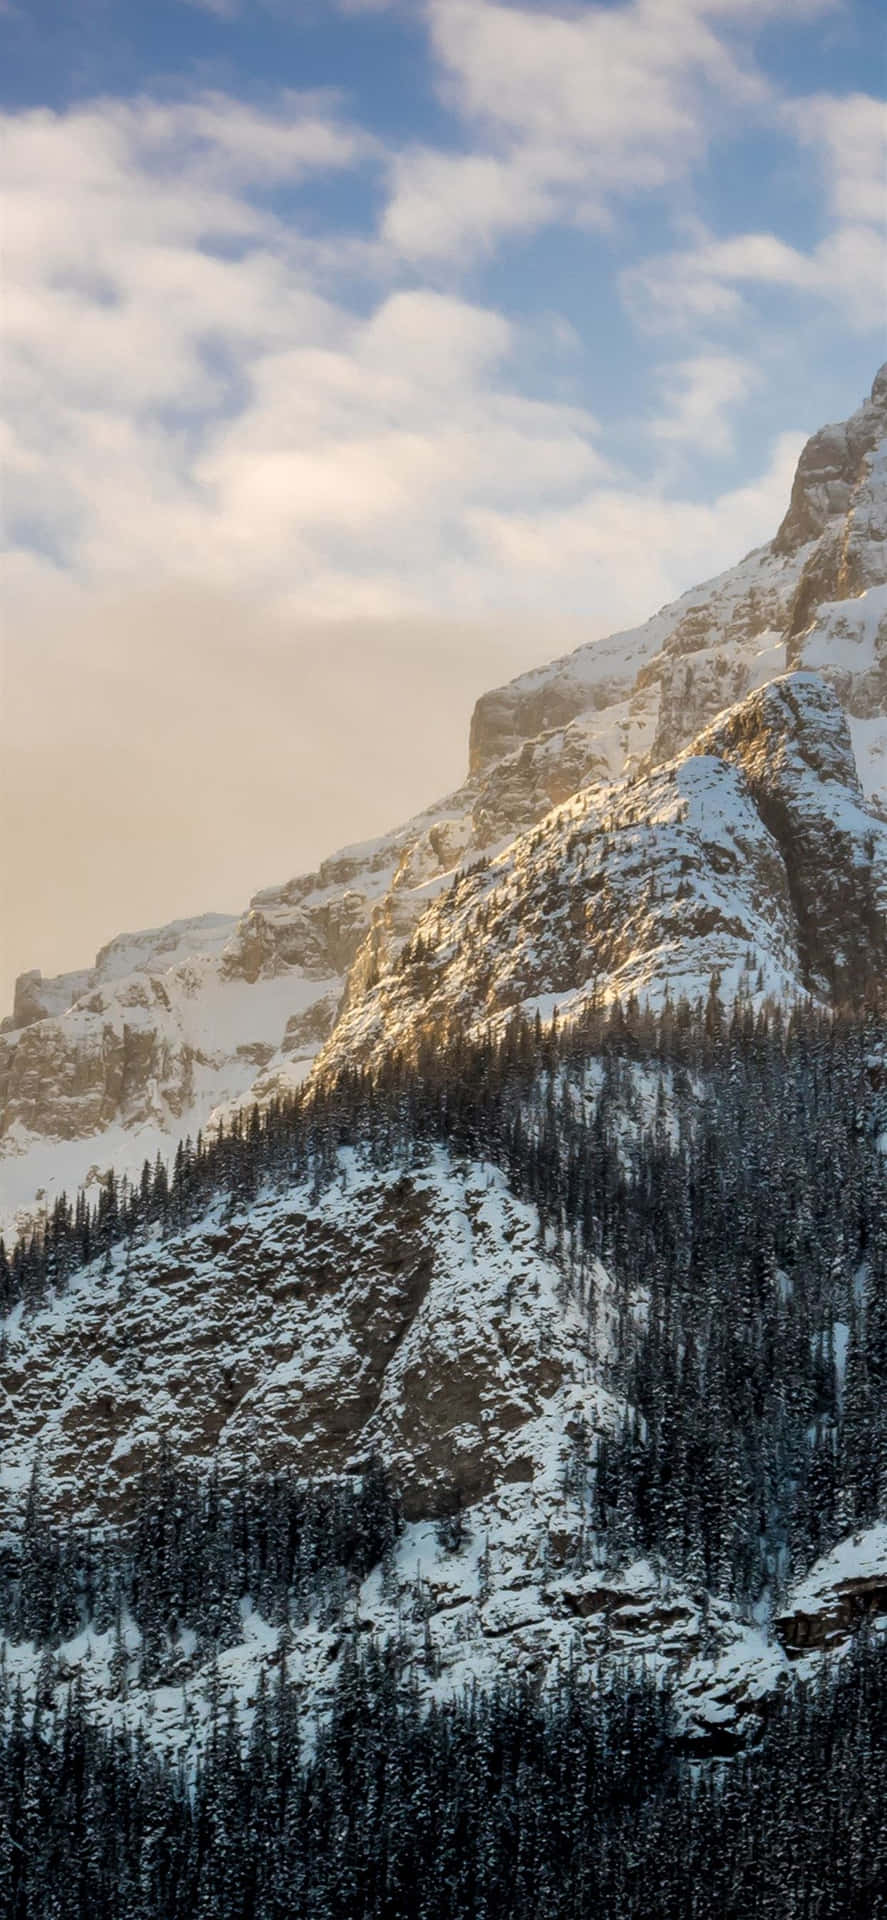 Nyd den fredelige vintersceneri med denne Nature Winter Iphone baggrund. Wallpaper